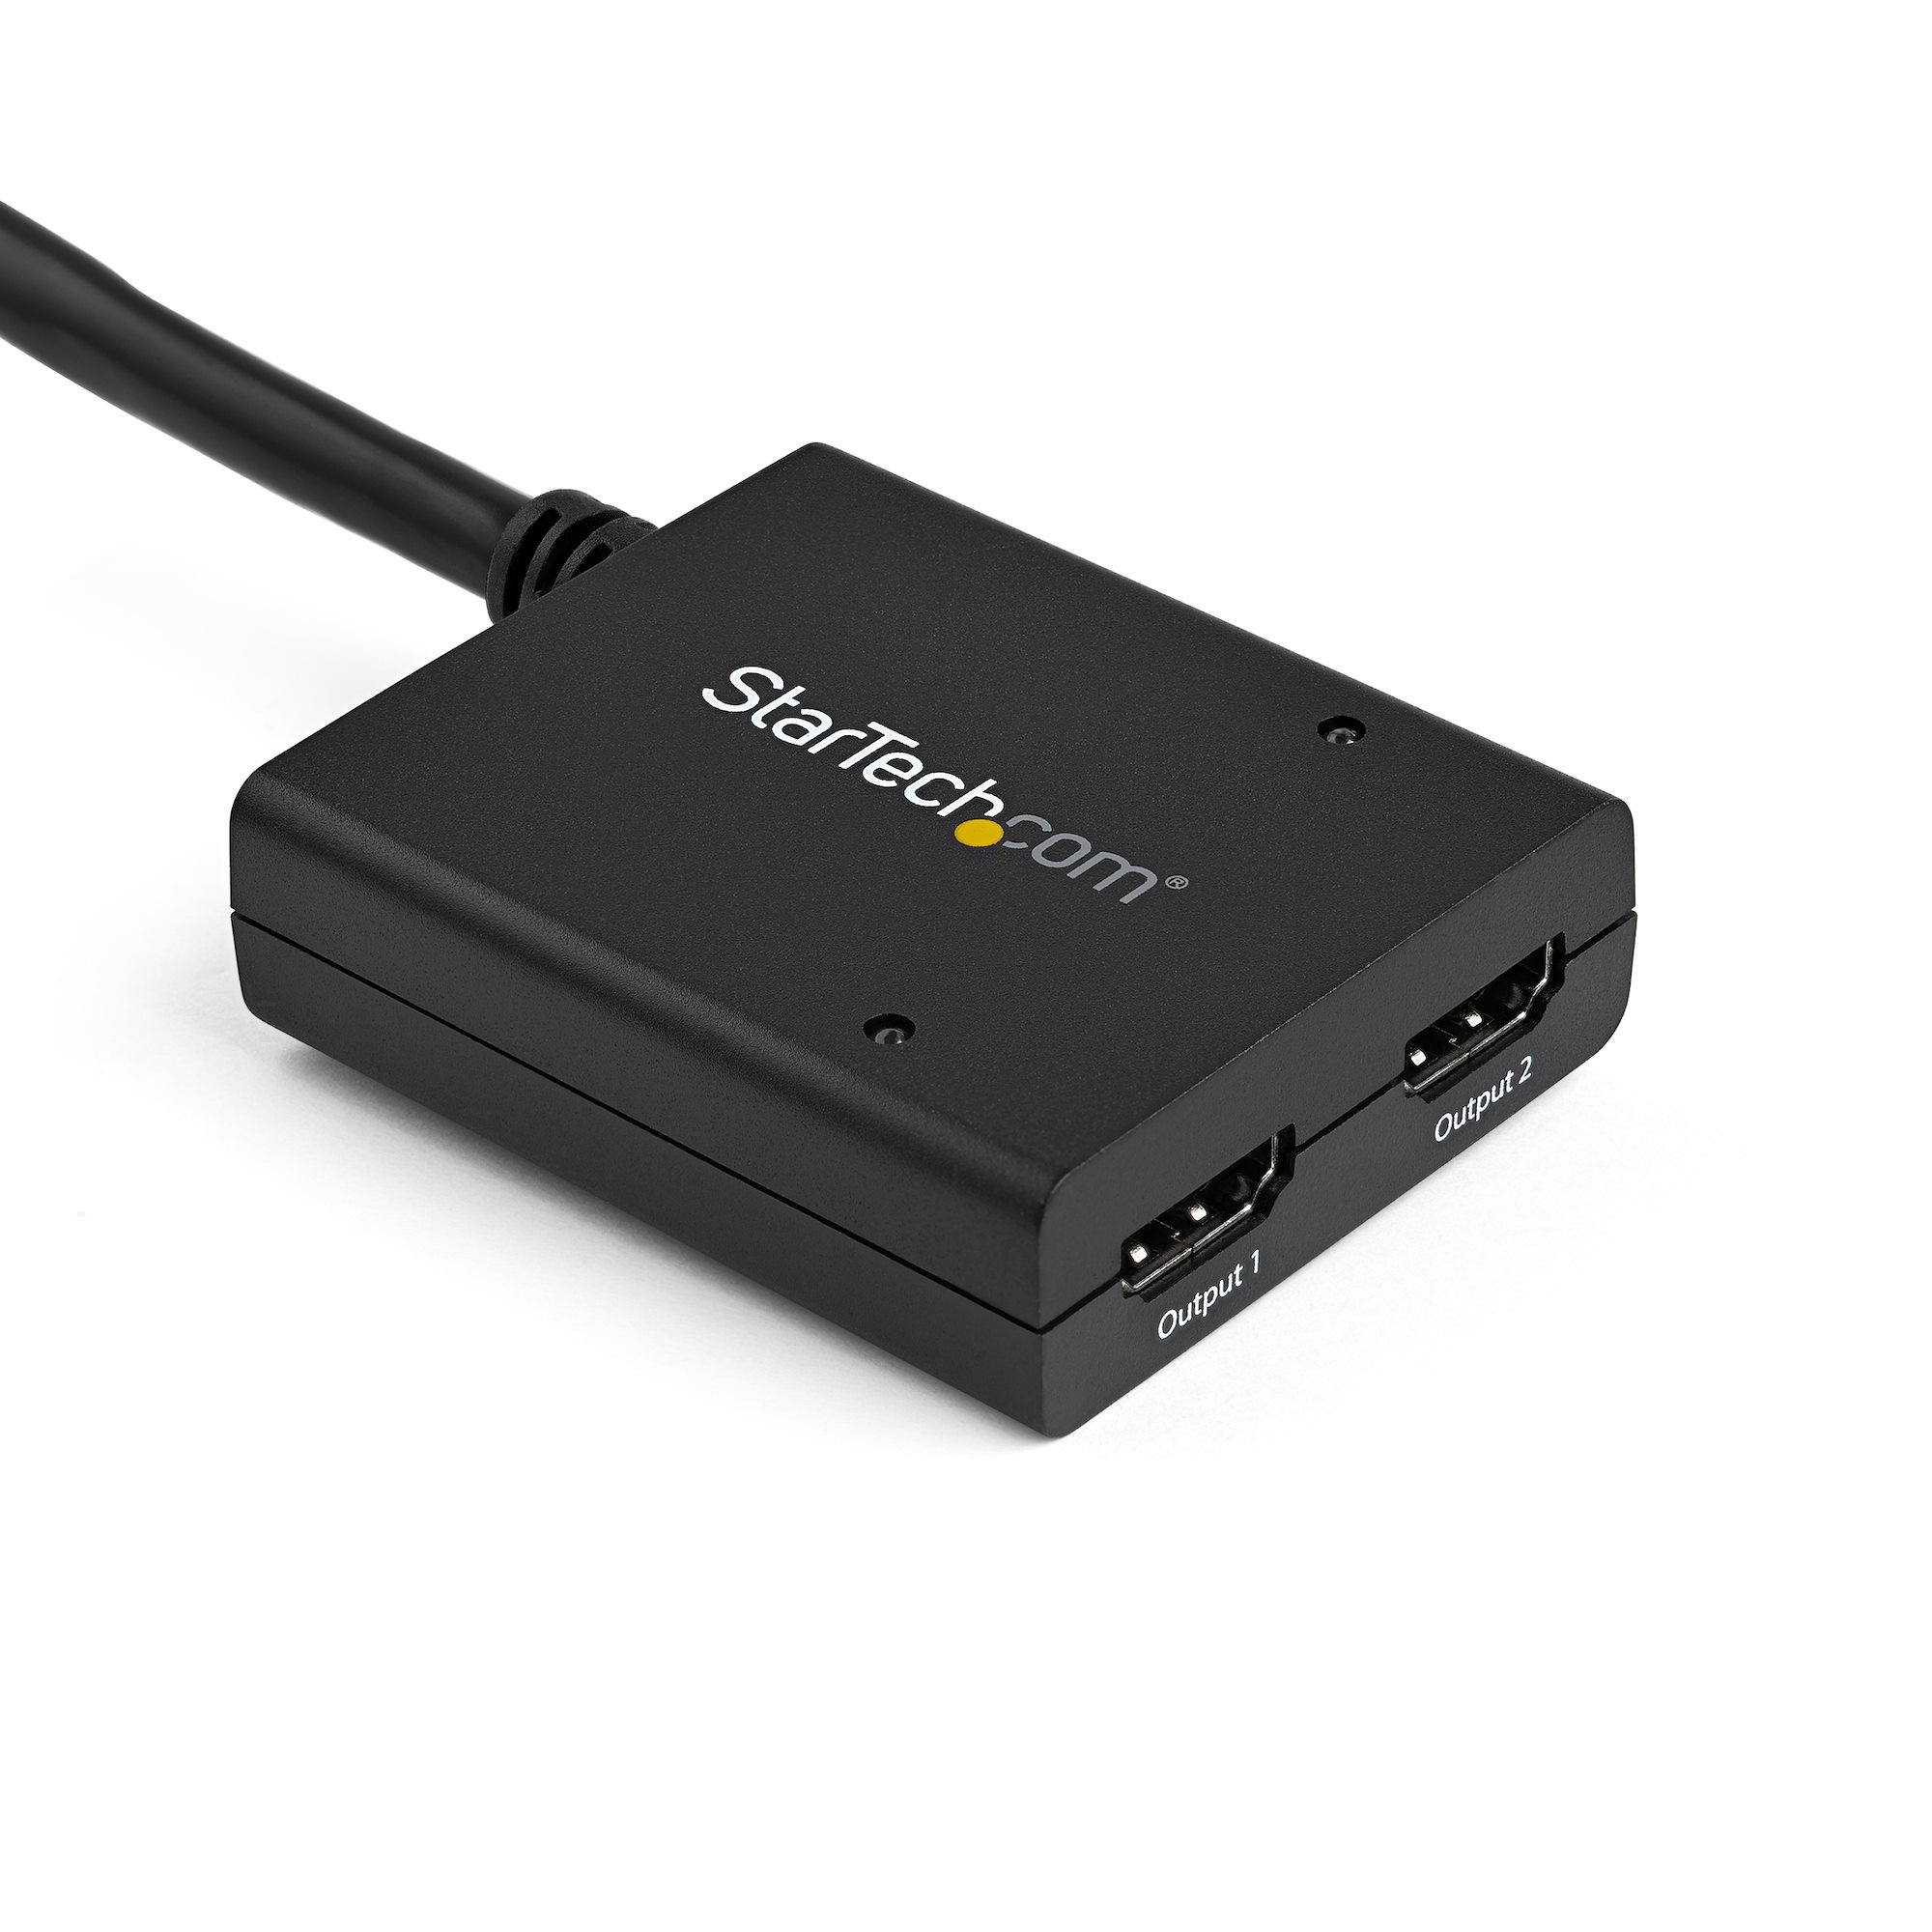 即納高品質 StarTech.com 8出力対応HDMIスプリッター分配器 3.5mm